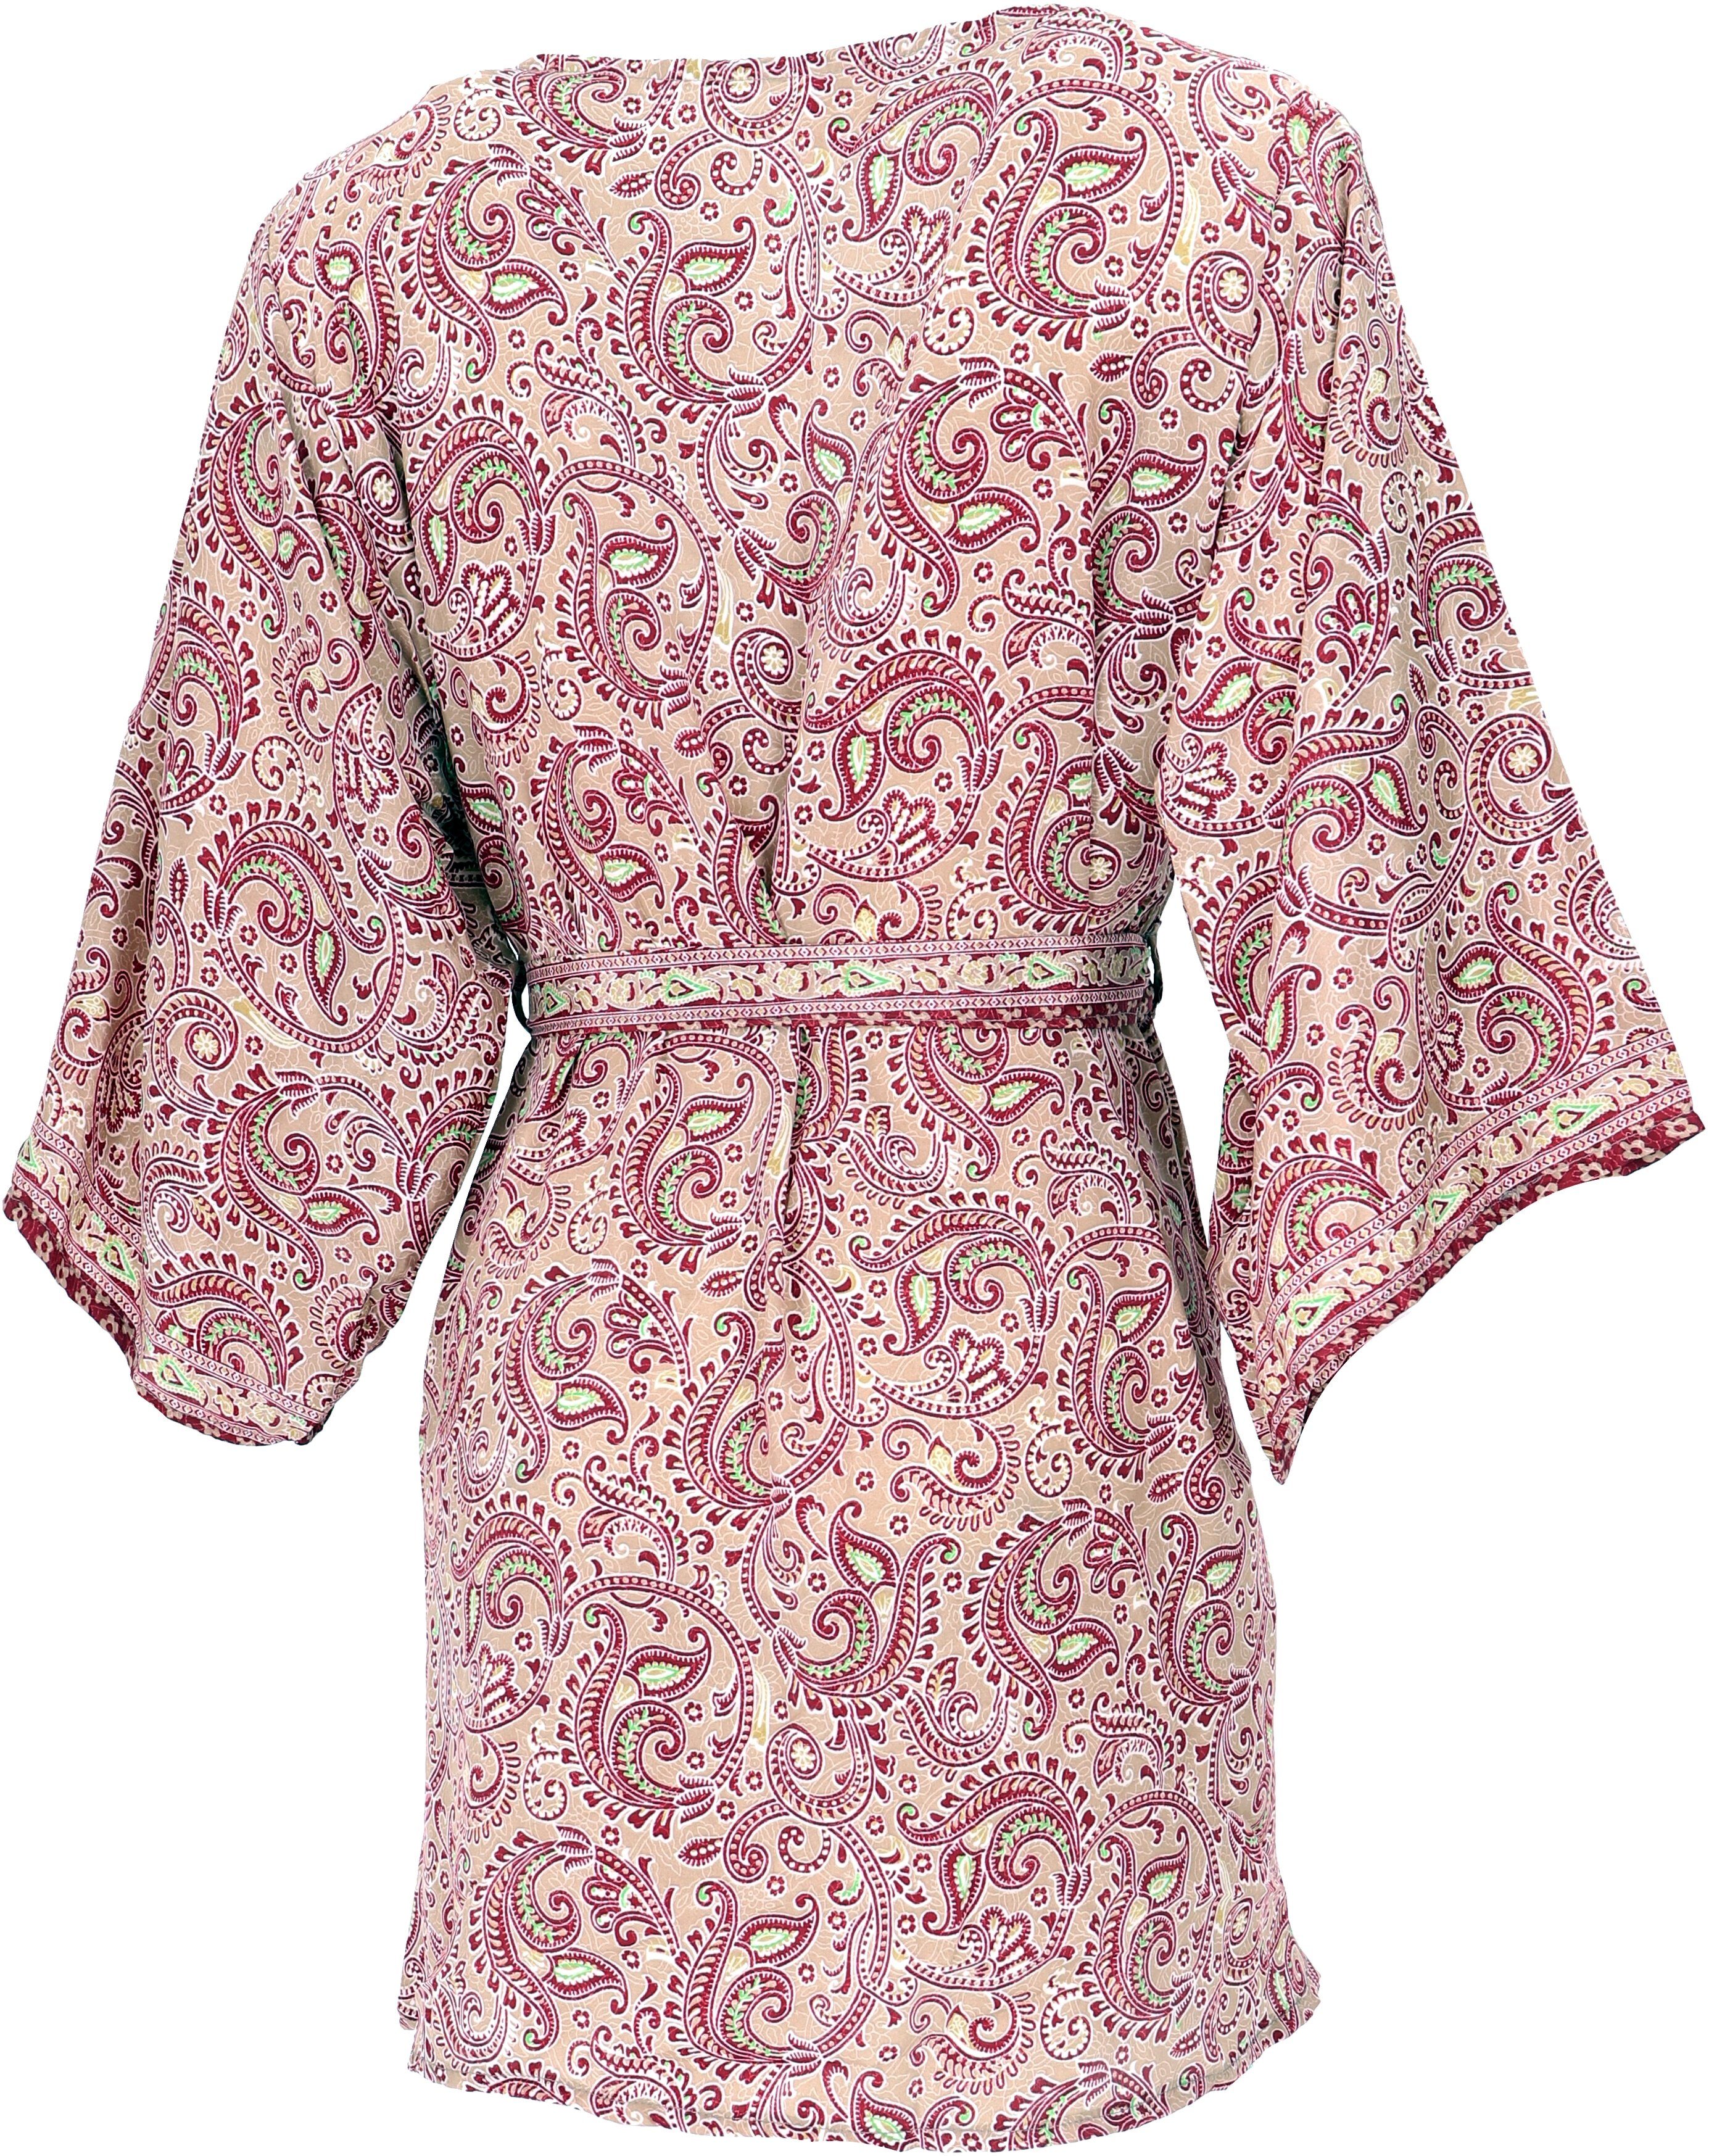 Kimonojäckchen, alternative Kimonokleid.., kurzer Guru-Shop Bekleidung Kimono, beige/bordeaux Boho Kimono